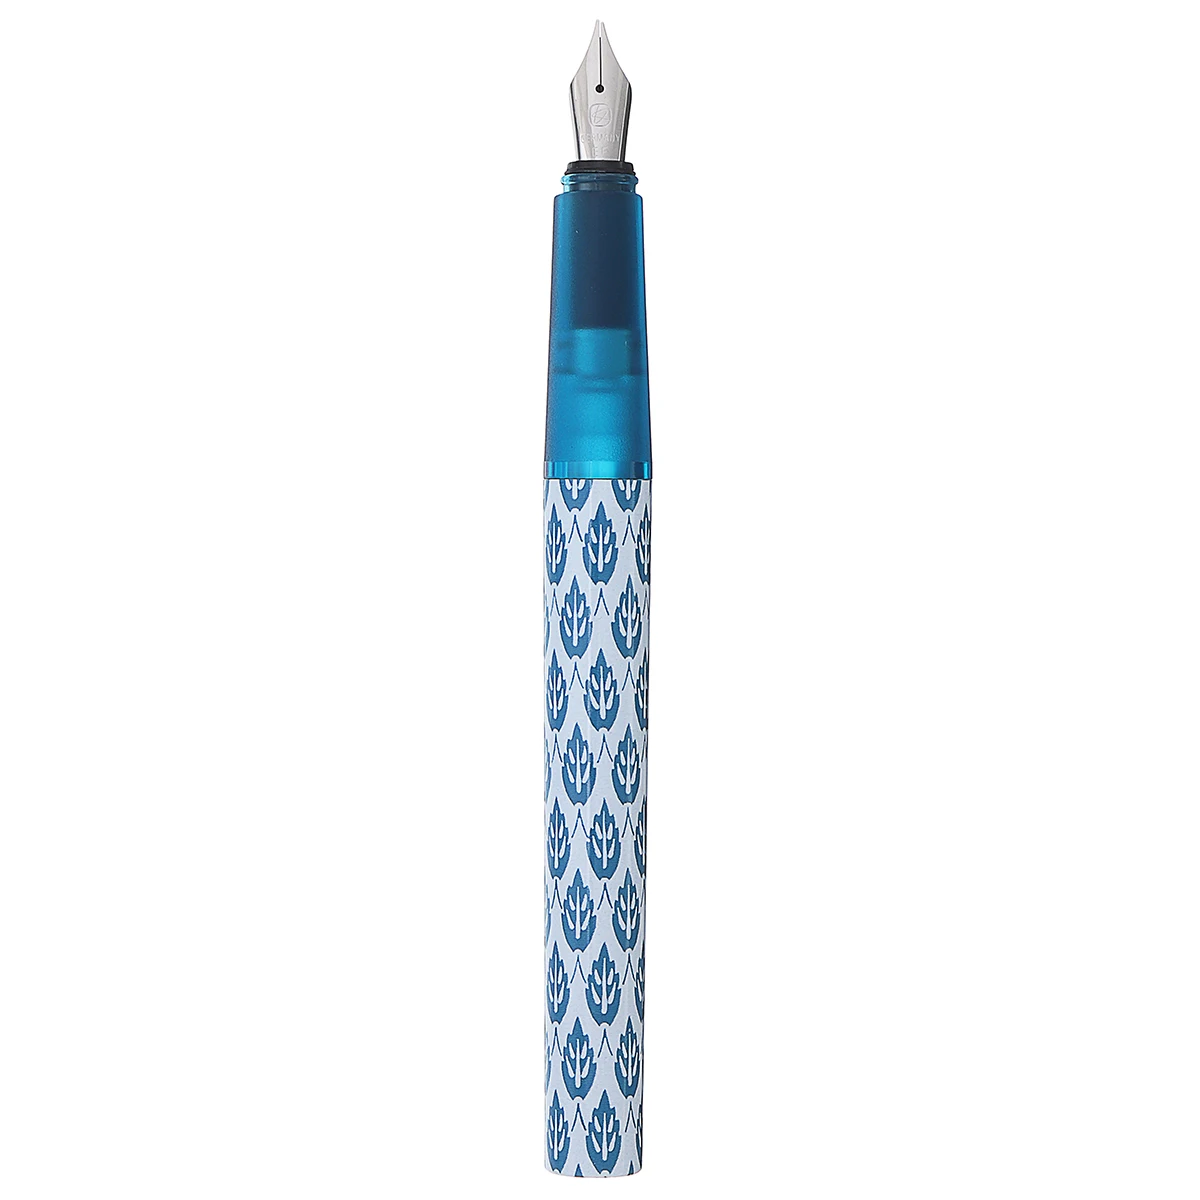 KACO X V& A, Коллекционная серия, небесно-фонтанная ручка, конвертер Шмидта, дополнительный тонкий наконечник 0,38 мм, чернильная ручка, Подарочная коробка, Офисная коллекция